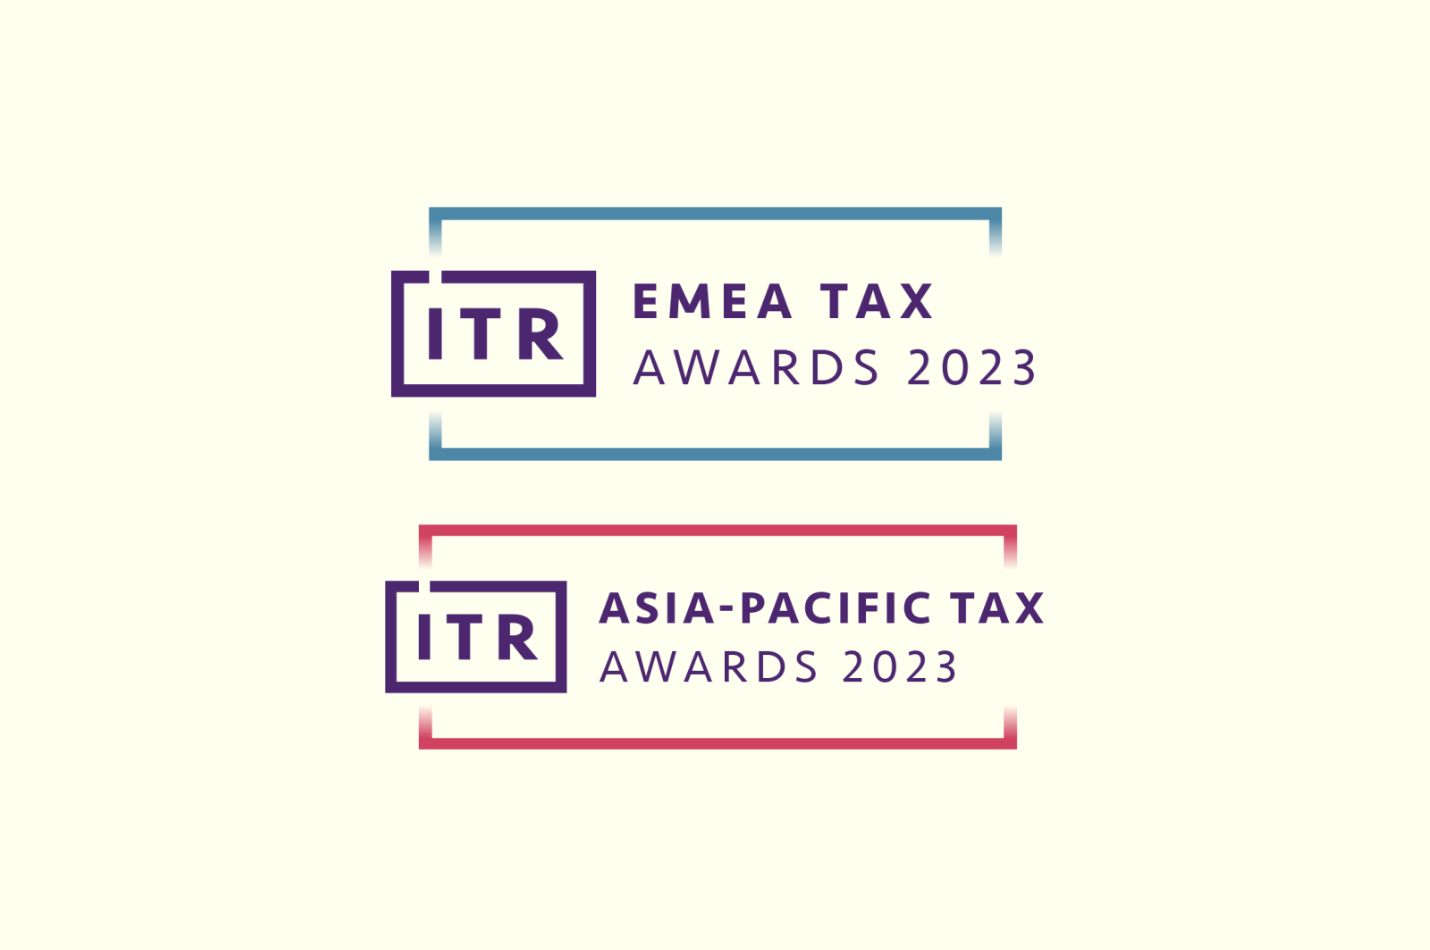 ITR Tax Awards 2023 shortlist